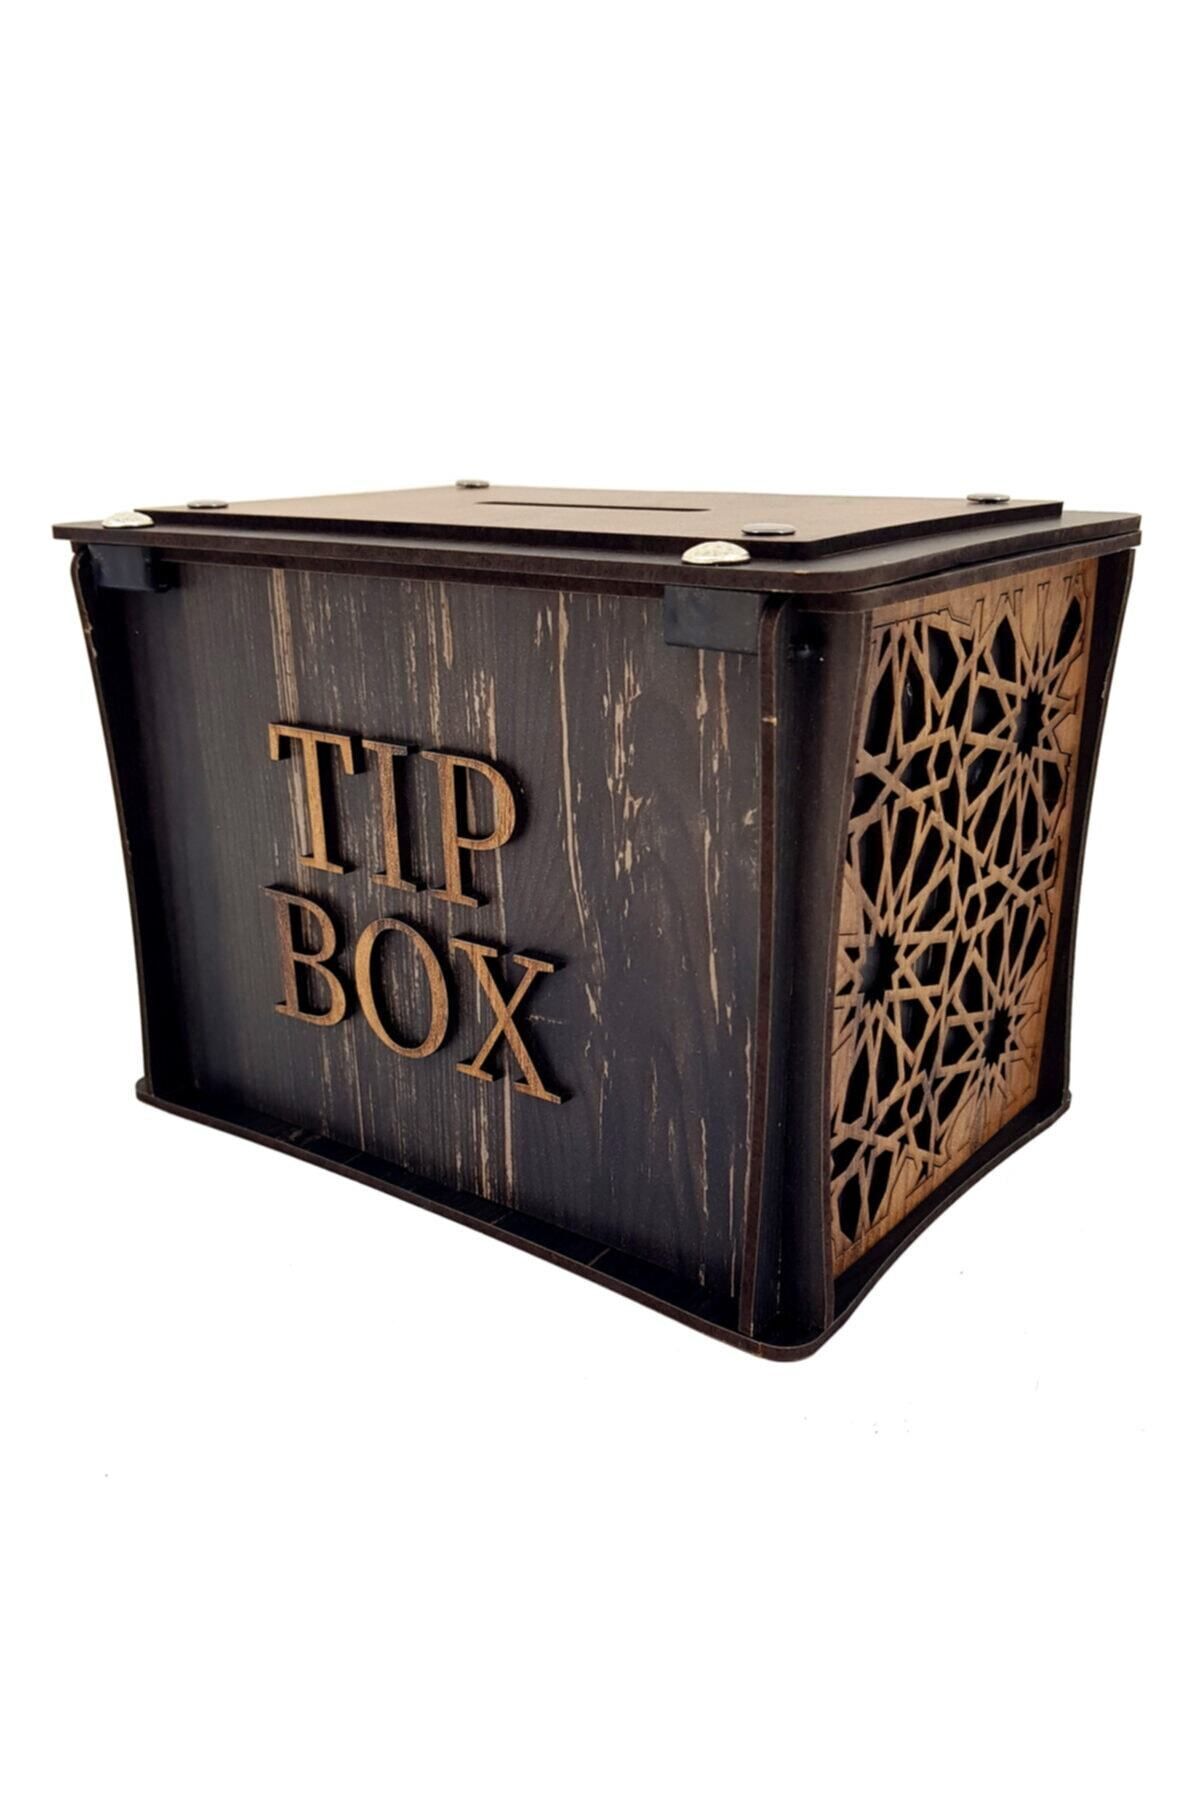 Demo Tasarım Tip Box Kumbara Ve Bahşiş Kutusu Tibbox. Klasik